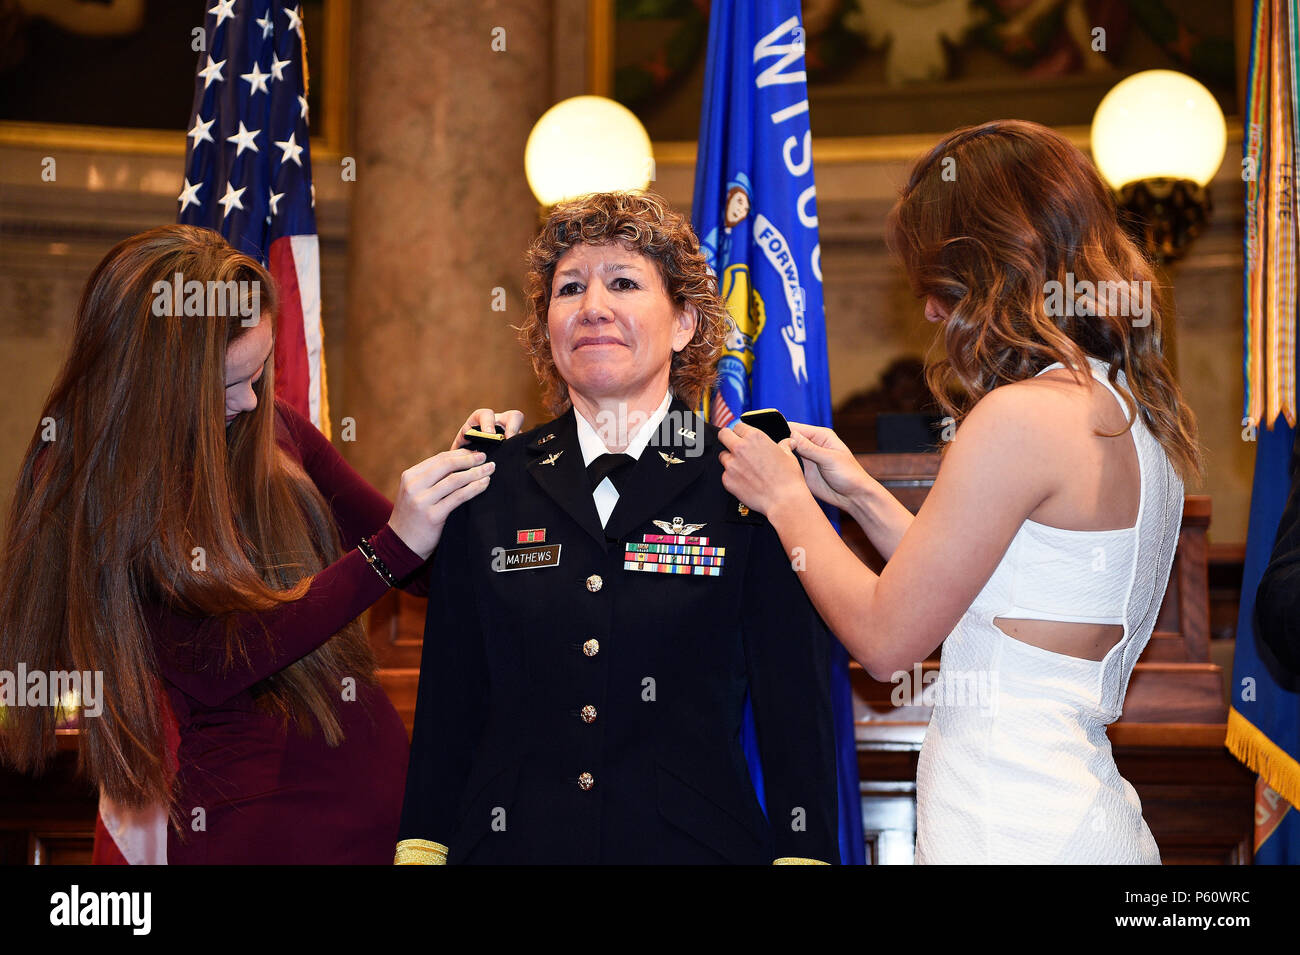 Brig. Gen. Joane Mathews" hijas de Shannon y Lindsey fije su shoulderboards reflejando su nuevo rango durante una ceremonia de promoción formal el 4 de abril en la cámara senatorial del